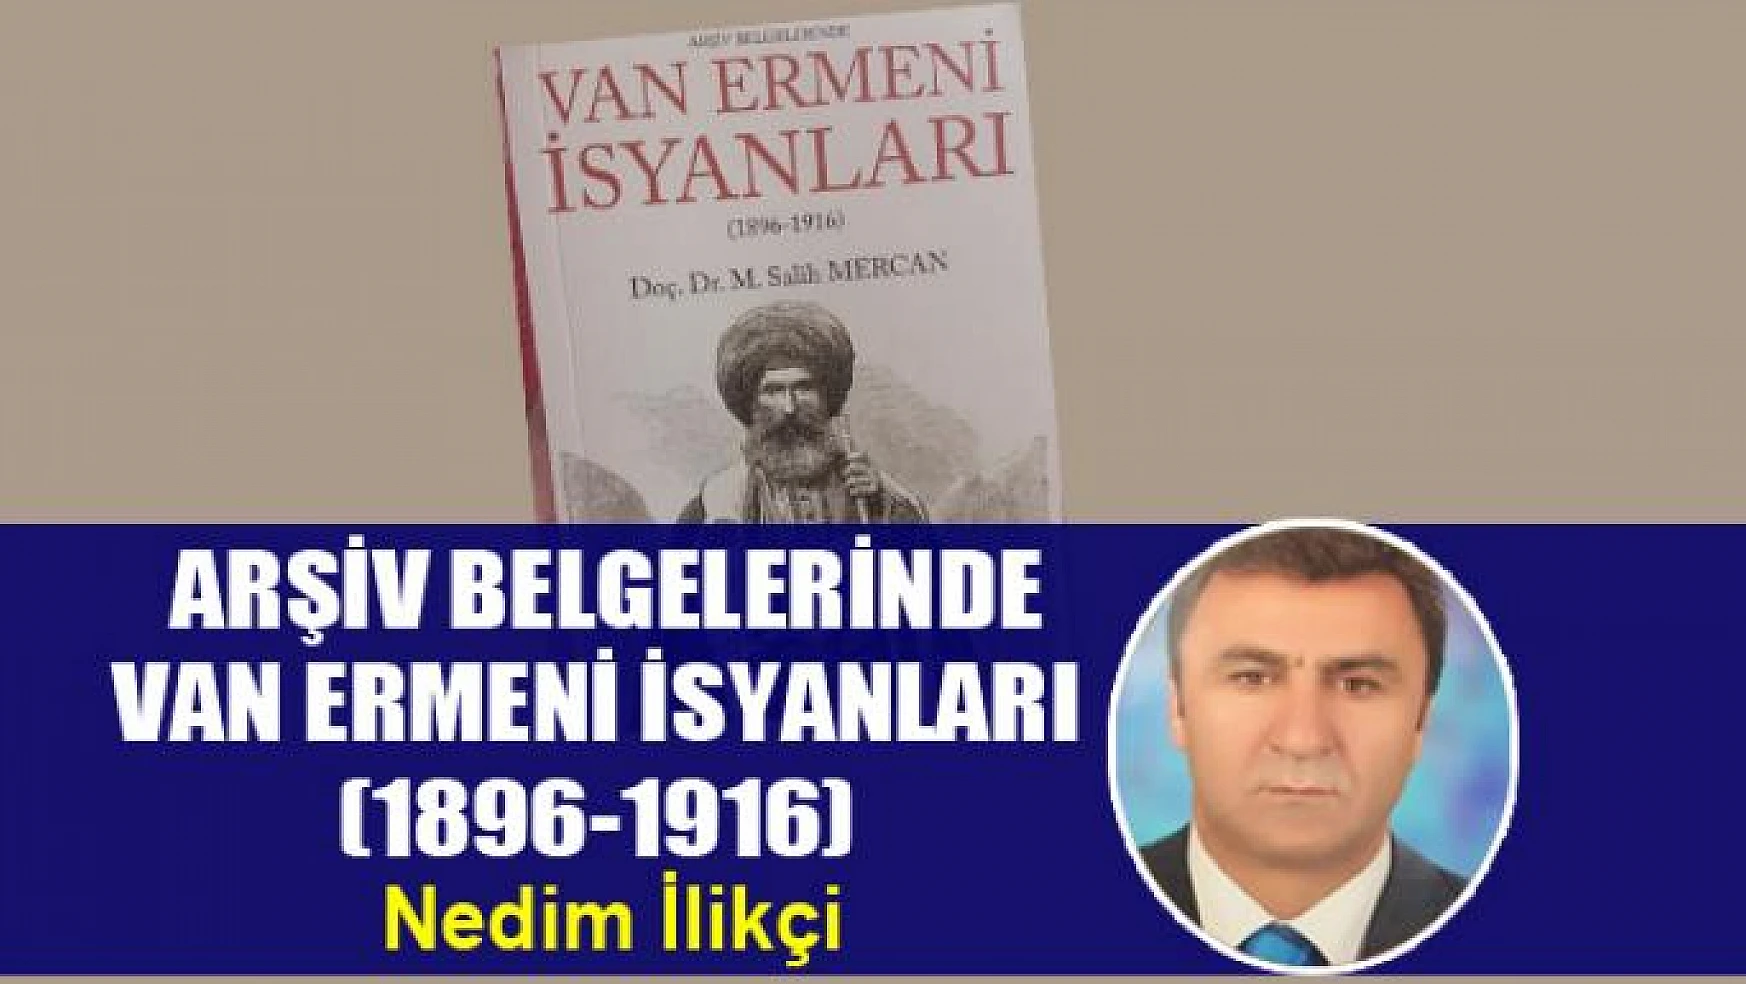  ARŞİV BELGELERİNDE VAN ERMENİ İSYANLARI (1896-1916)